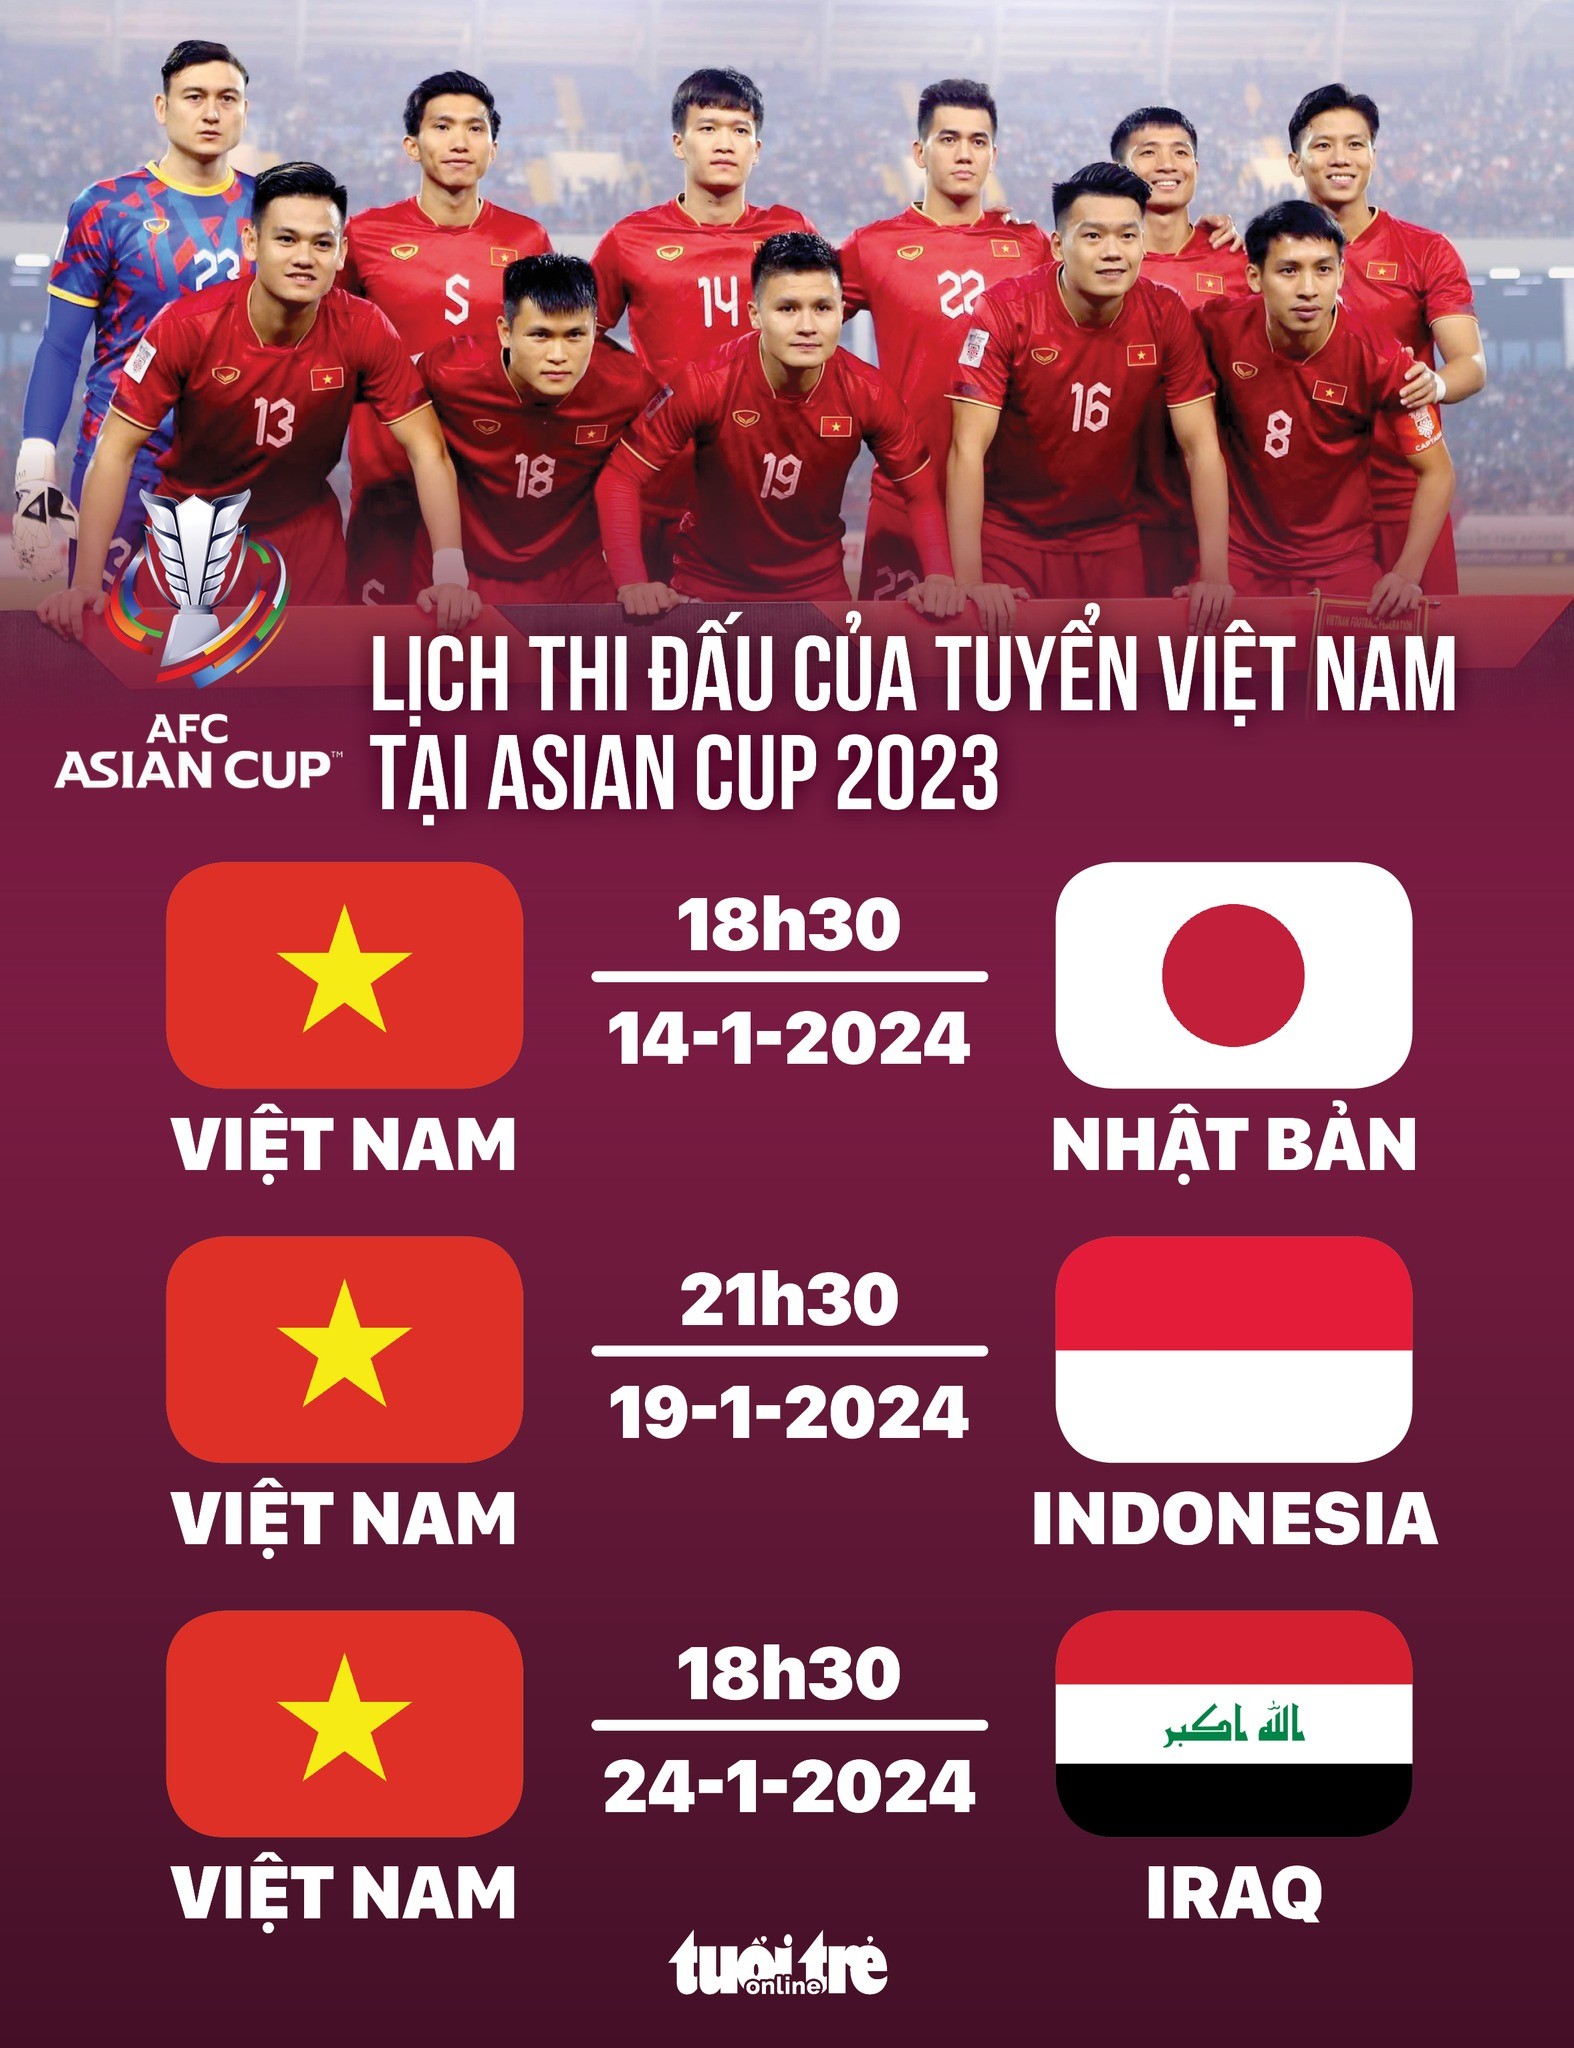 lich-thi-dau-asian-cup-2023-1684483642.jpg